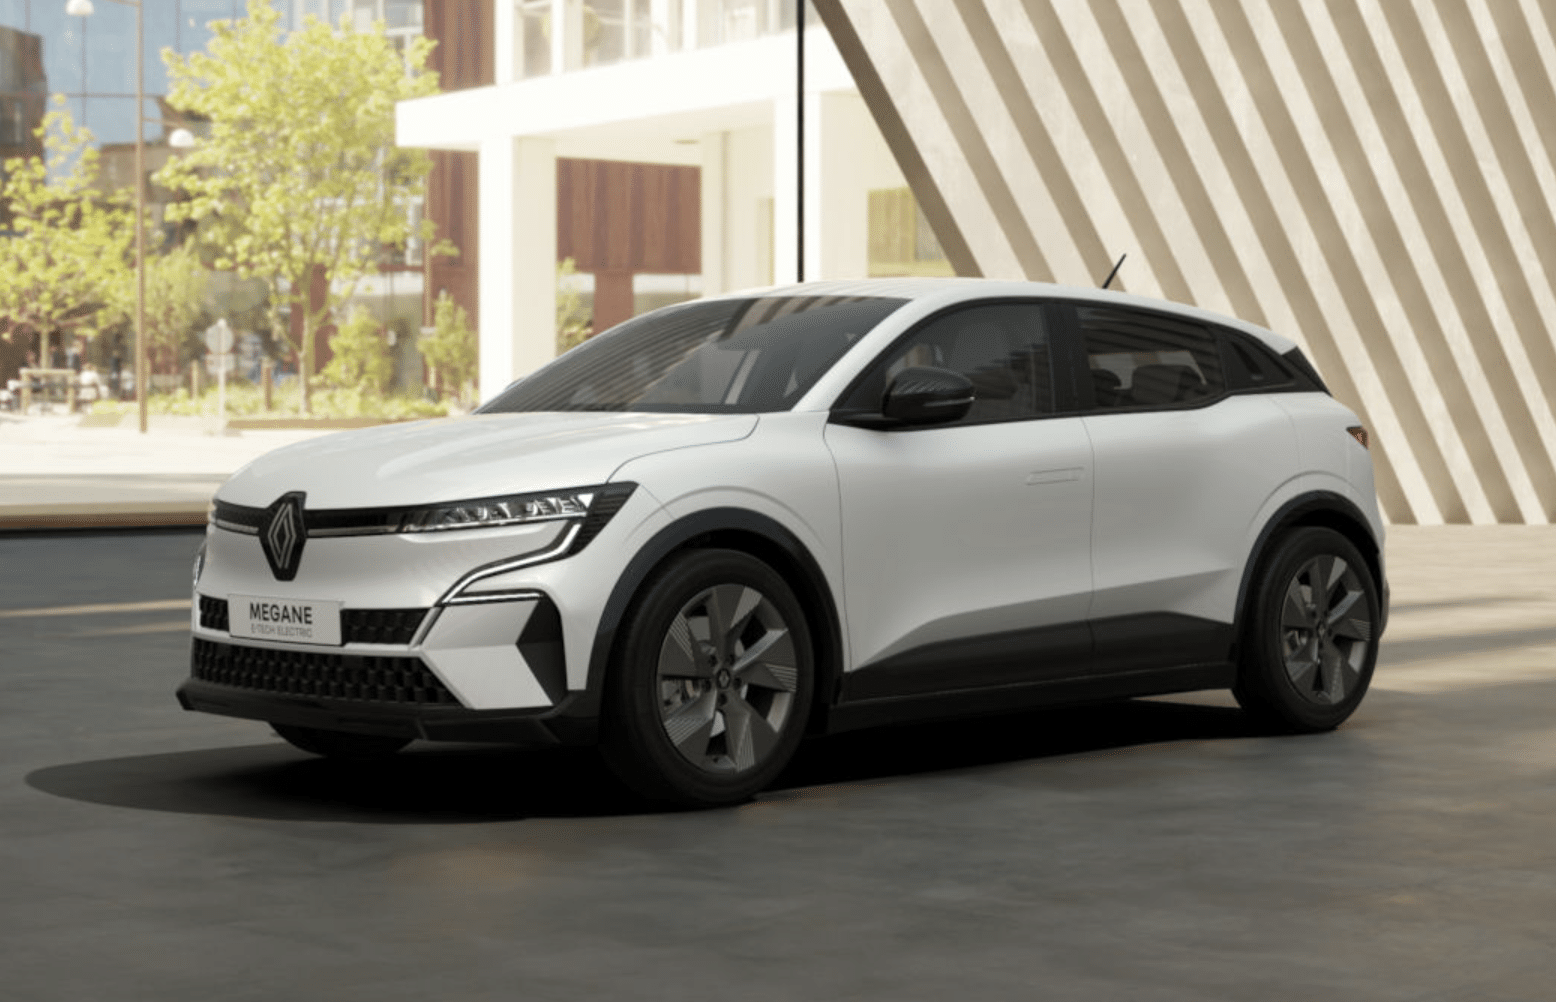 Renault améliore la Megane électrique avec plus d’autonomie, découvrez la nouvelle gamme 2024